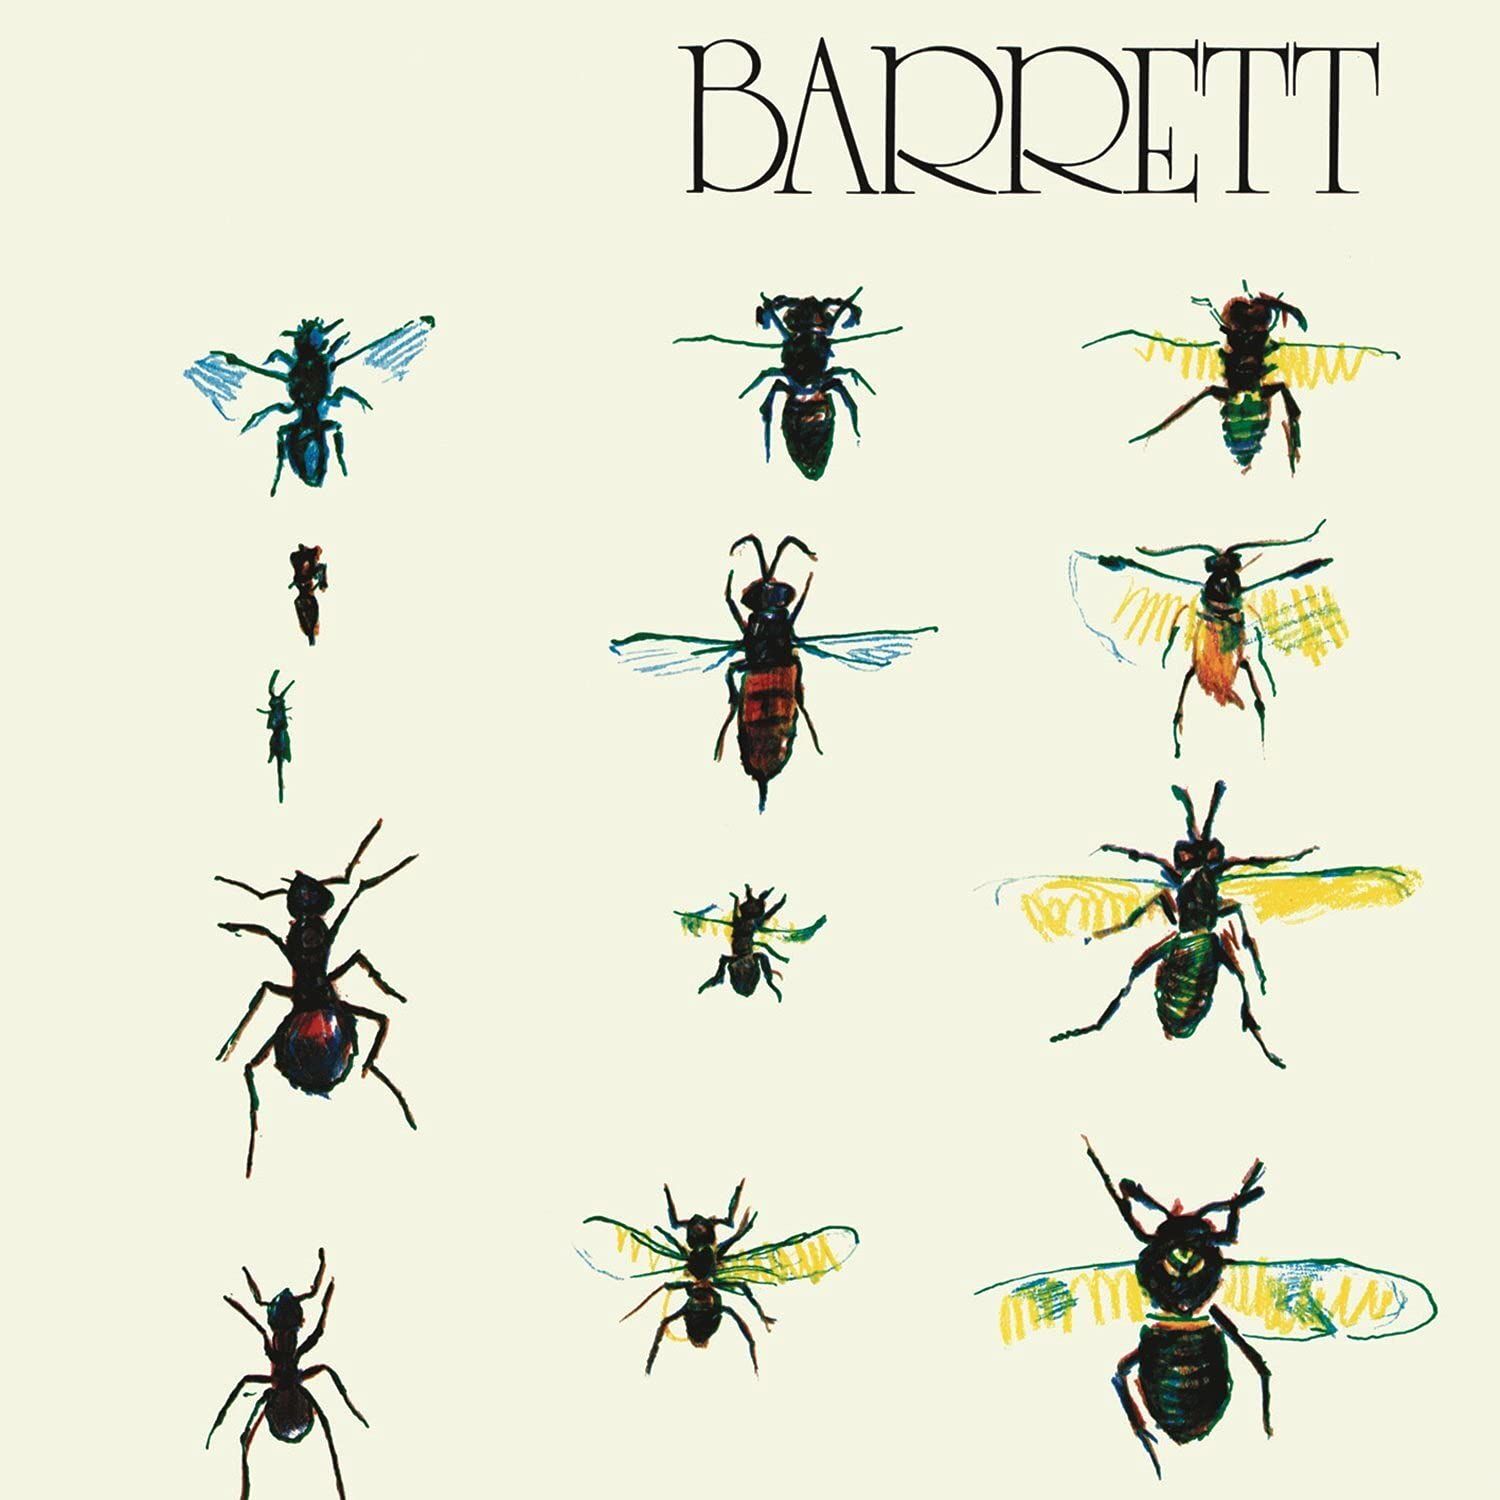 SYD BARRETT - BARRETT (1970) - LP 2014 EDITION SIFIR PLAK